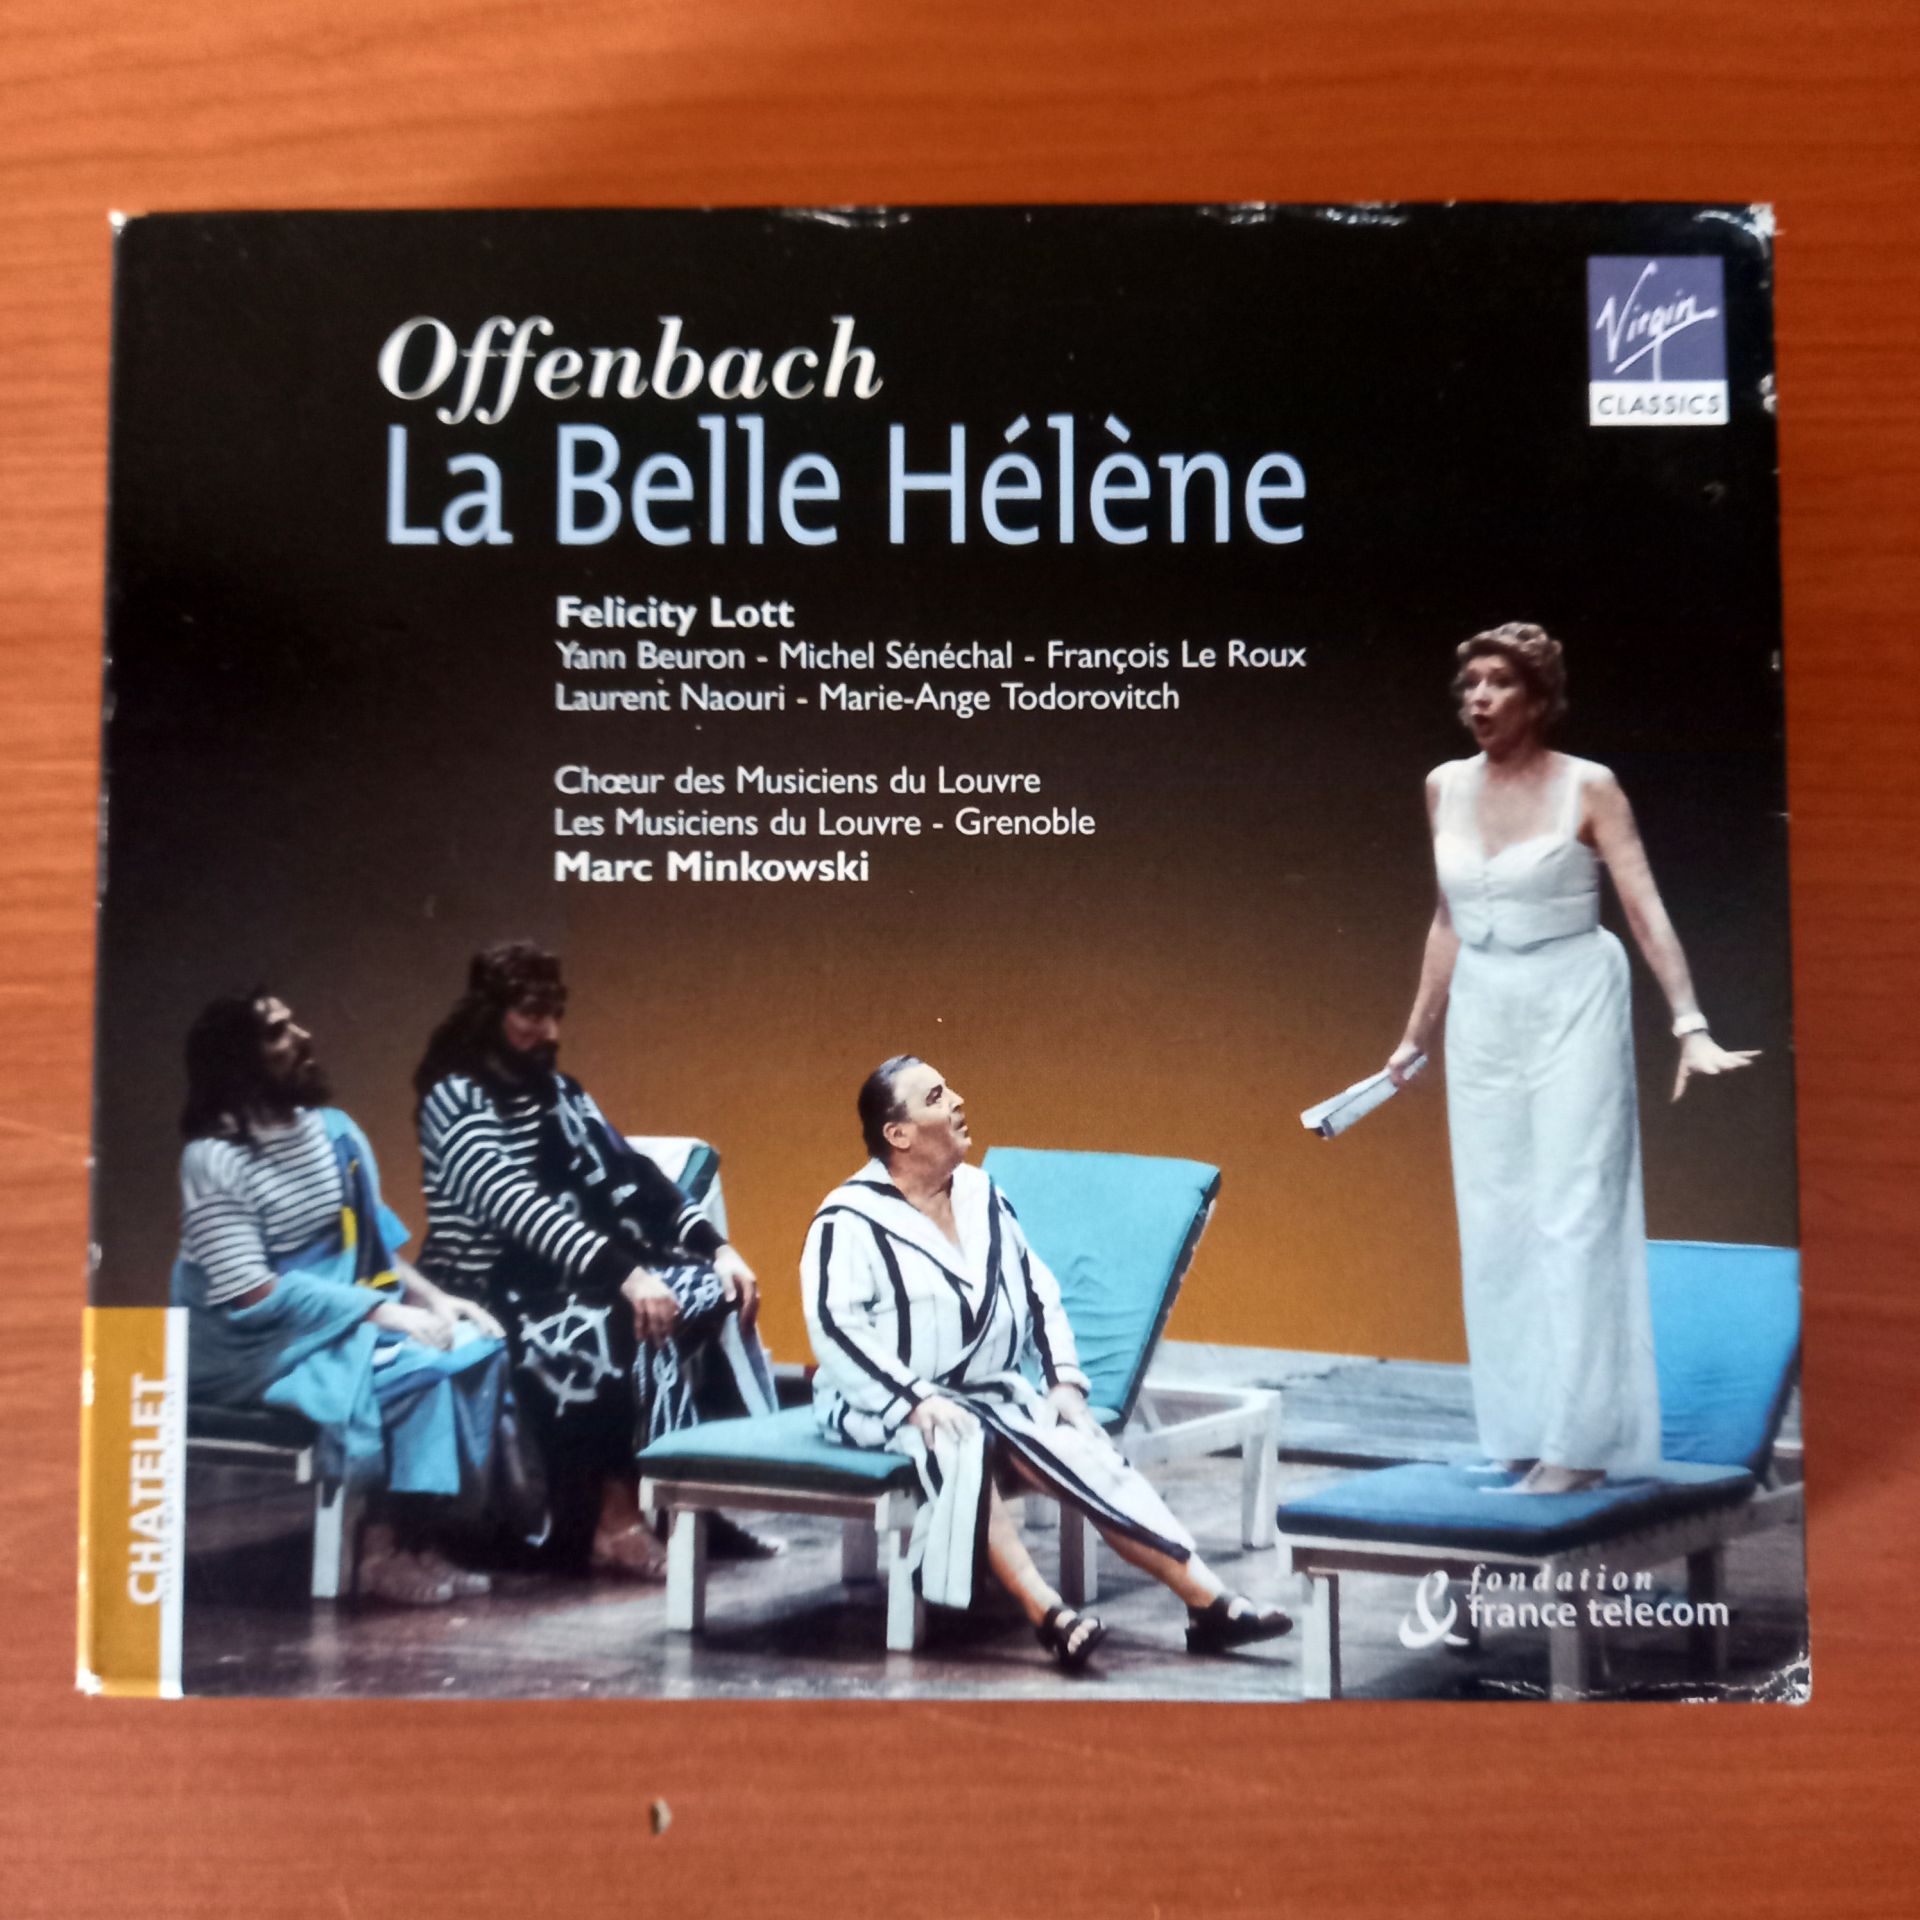 OFFENBACH: LA BELLE HELENE / FELICITY LOTT, YANN BEURON, MICHEL SENECHAL, FRANÇOIS LE ROUX, LAURENT NAOURI, MARIE-ANGE TODOROVITCH, CHŒUR DES MUSICIENS DU LOUVRE, LES MUSICIENS DU LOUVRE - GRENOBLE, MARC MINKOWSKI (2001) - 2CD 2.EL